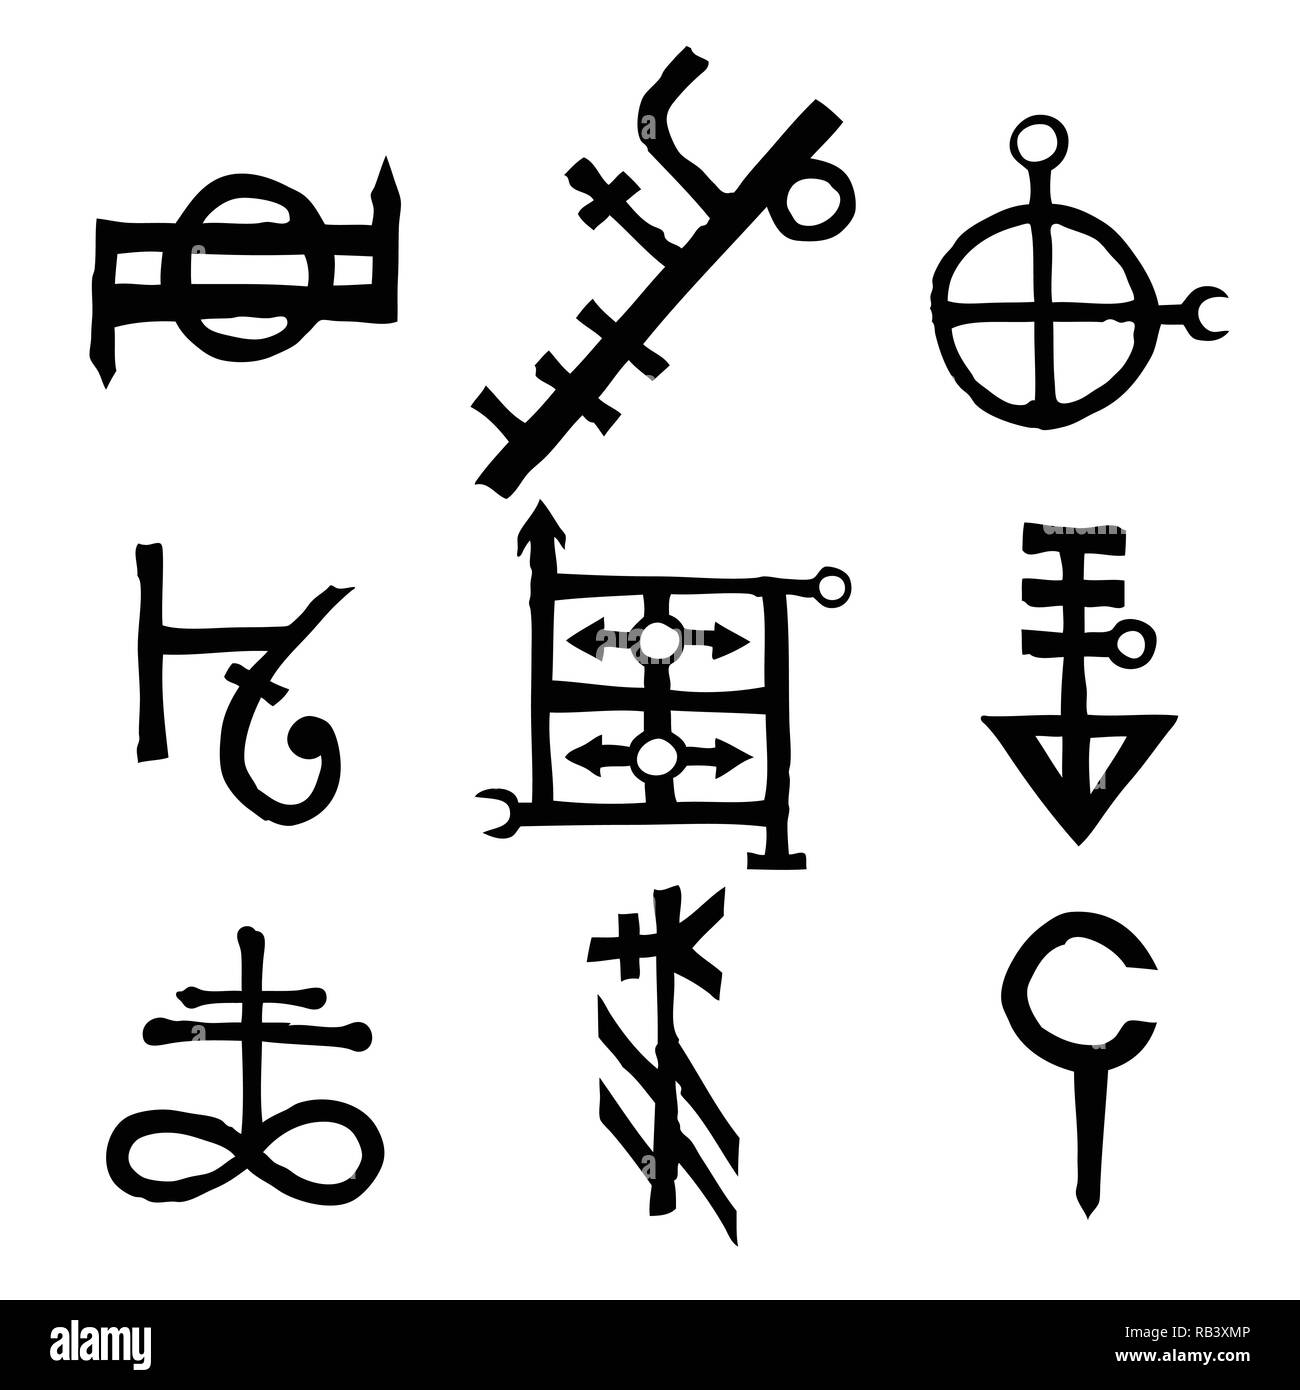 Satz von Altnordisch skandinavisch Runen imaginären Version. Symbole, runenalphabet Futhark. Von den alten okkulten Symbolen inspiriert, Wikinger Briefe und Runen. Stock Vektor